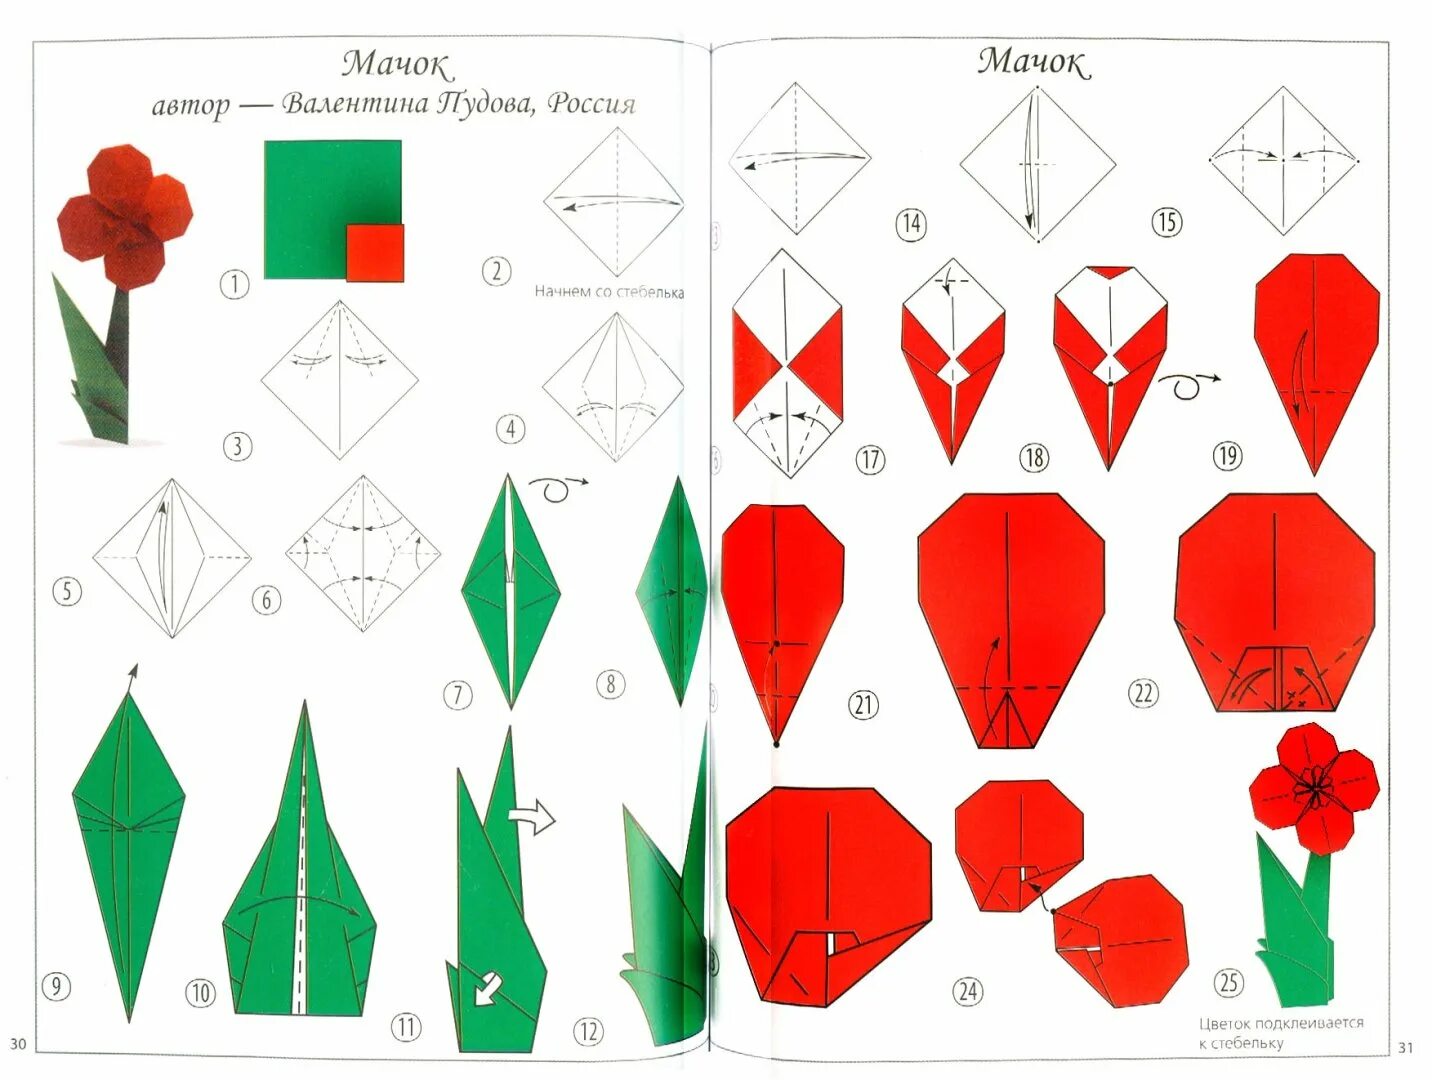 Как сделать тюльпан из бумаги поэтапно. Оригами из бумаги для начинающих тюльпан схема пошагово. Оригами тюльпан пошагово для начинающих. Оригами тюльпан из бумаги схема для детей. Оригами тюльпан схема для начинающих пошагово.